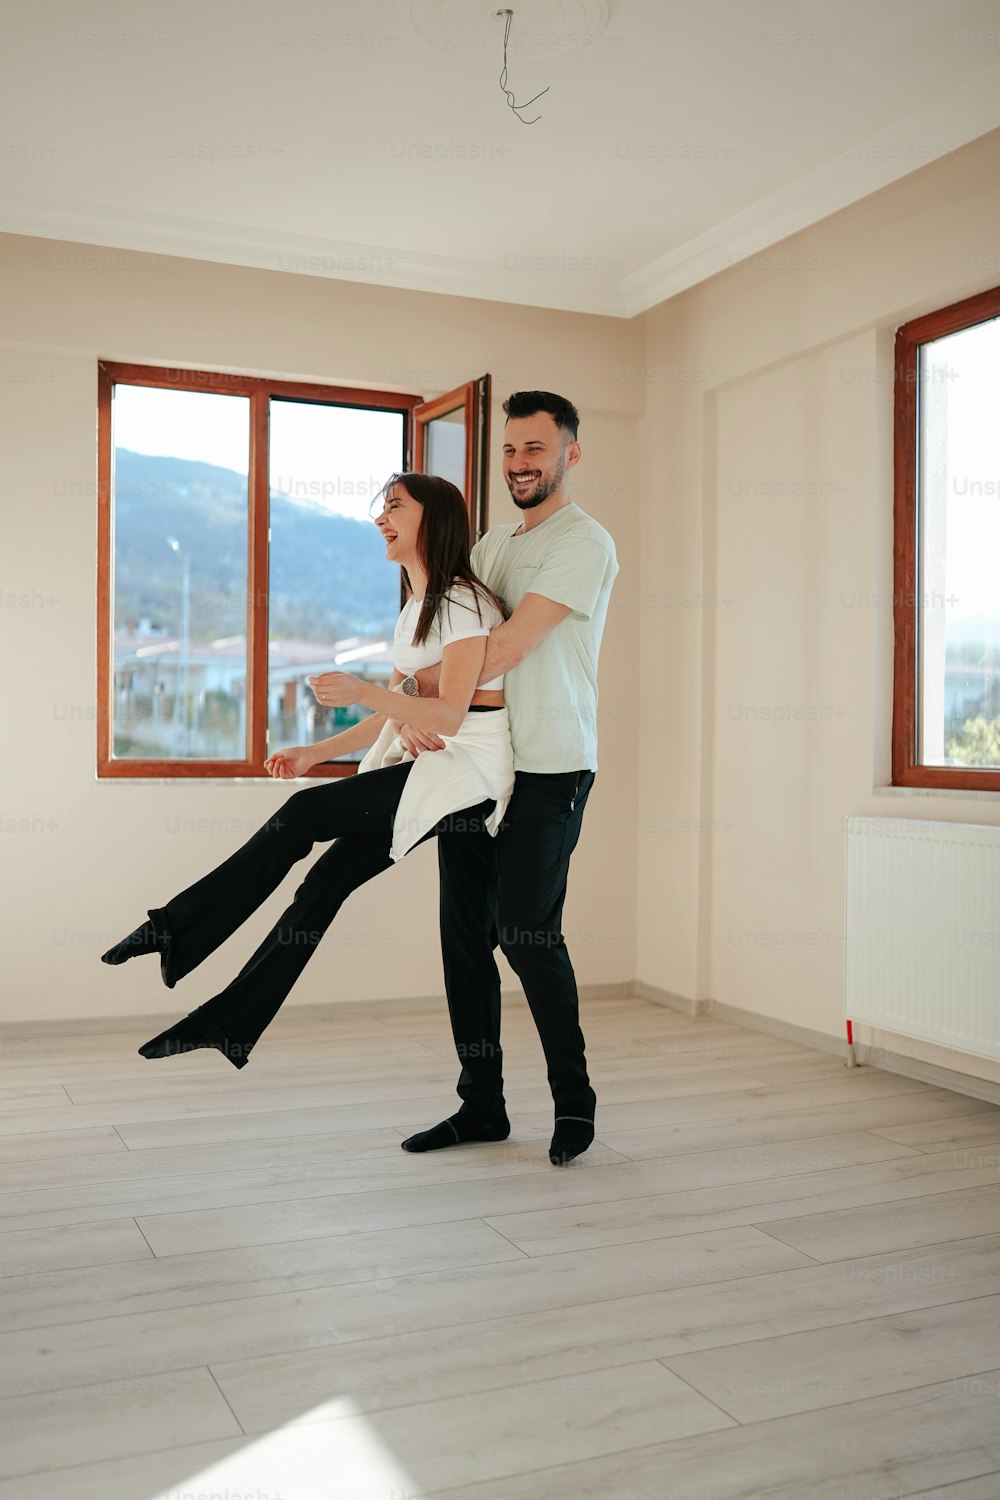 Ein Mann und eine Frau tanzen in einem Raum